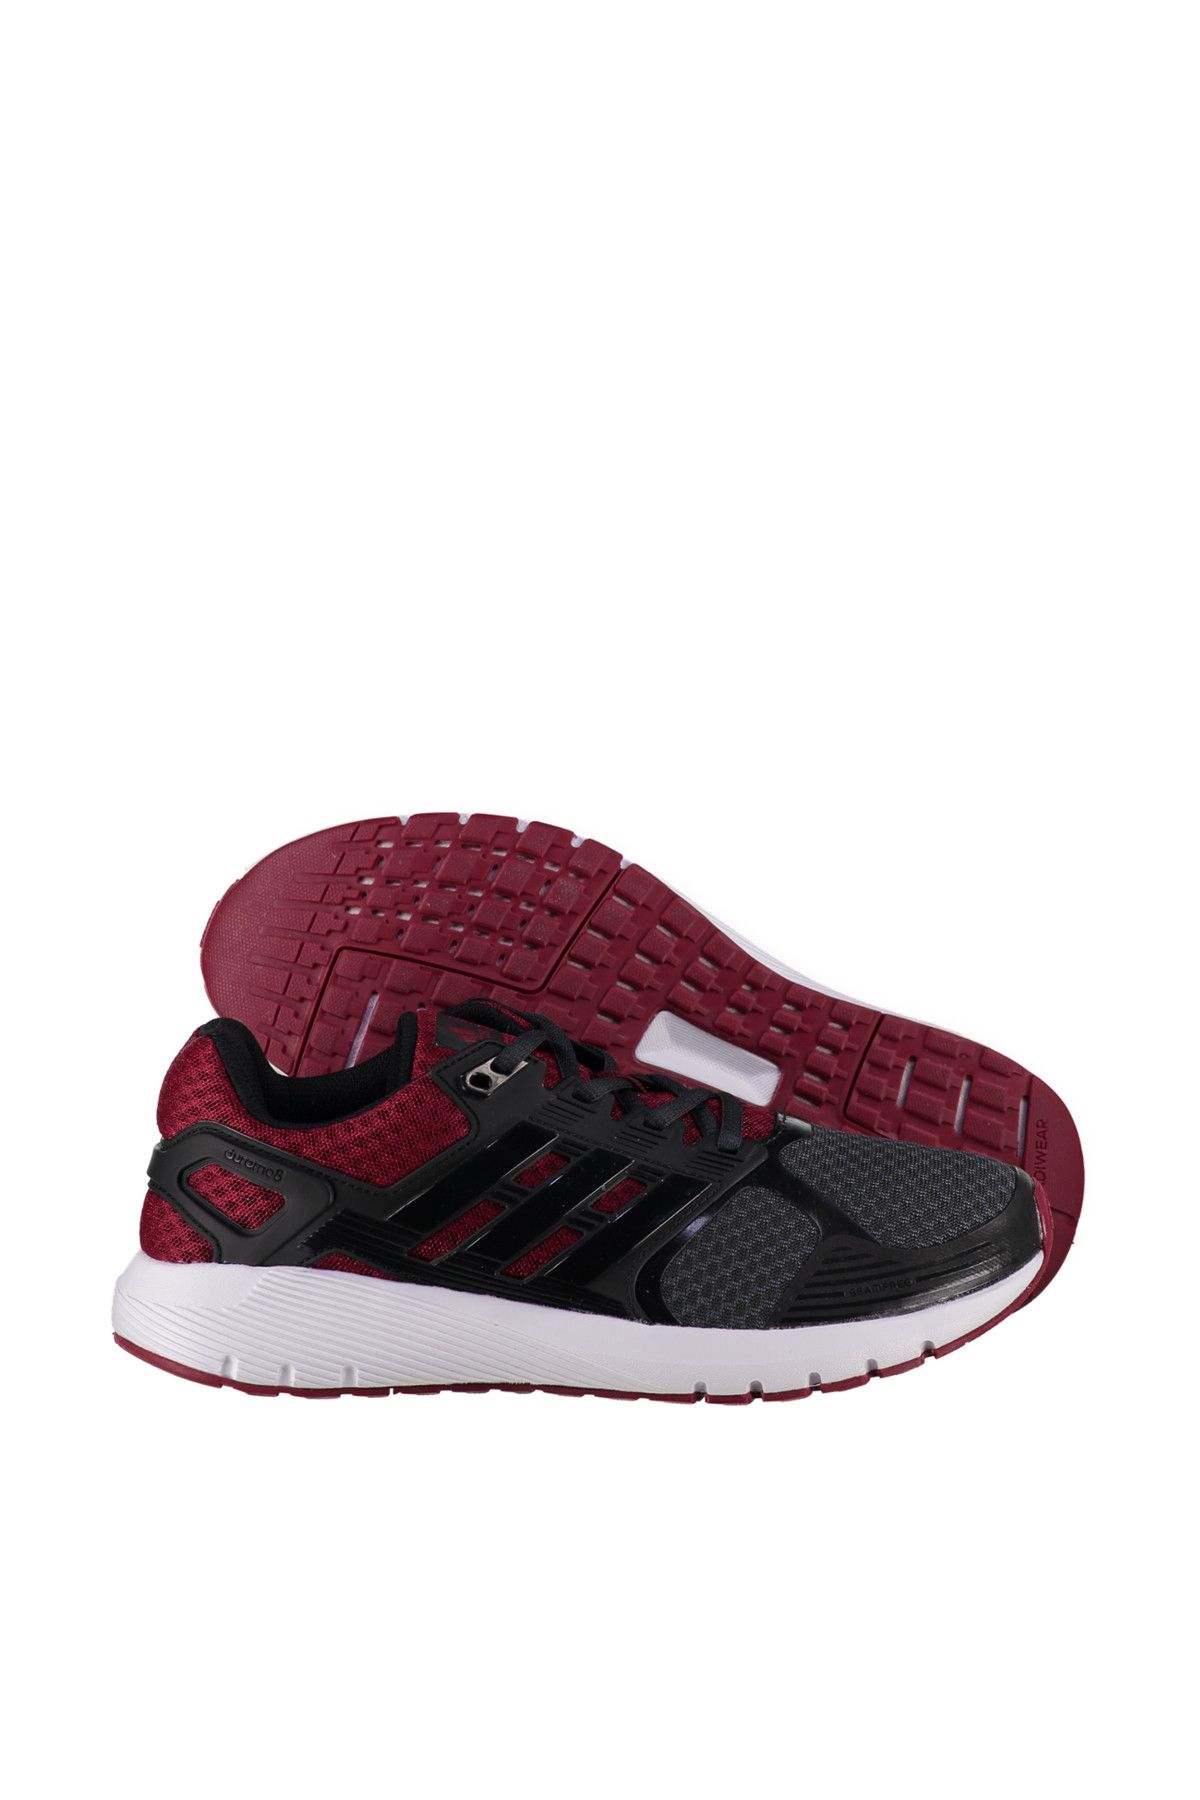 adidas Erkek Koşu & Antrenman Ayakkabısı - Duramo 8 Spor Ayakkabısı - BB4654